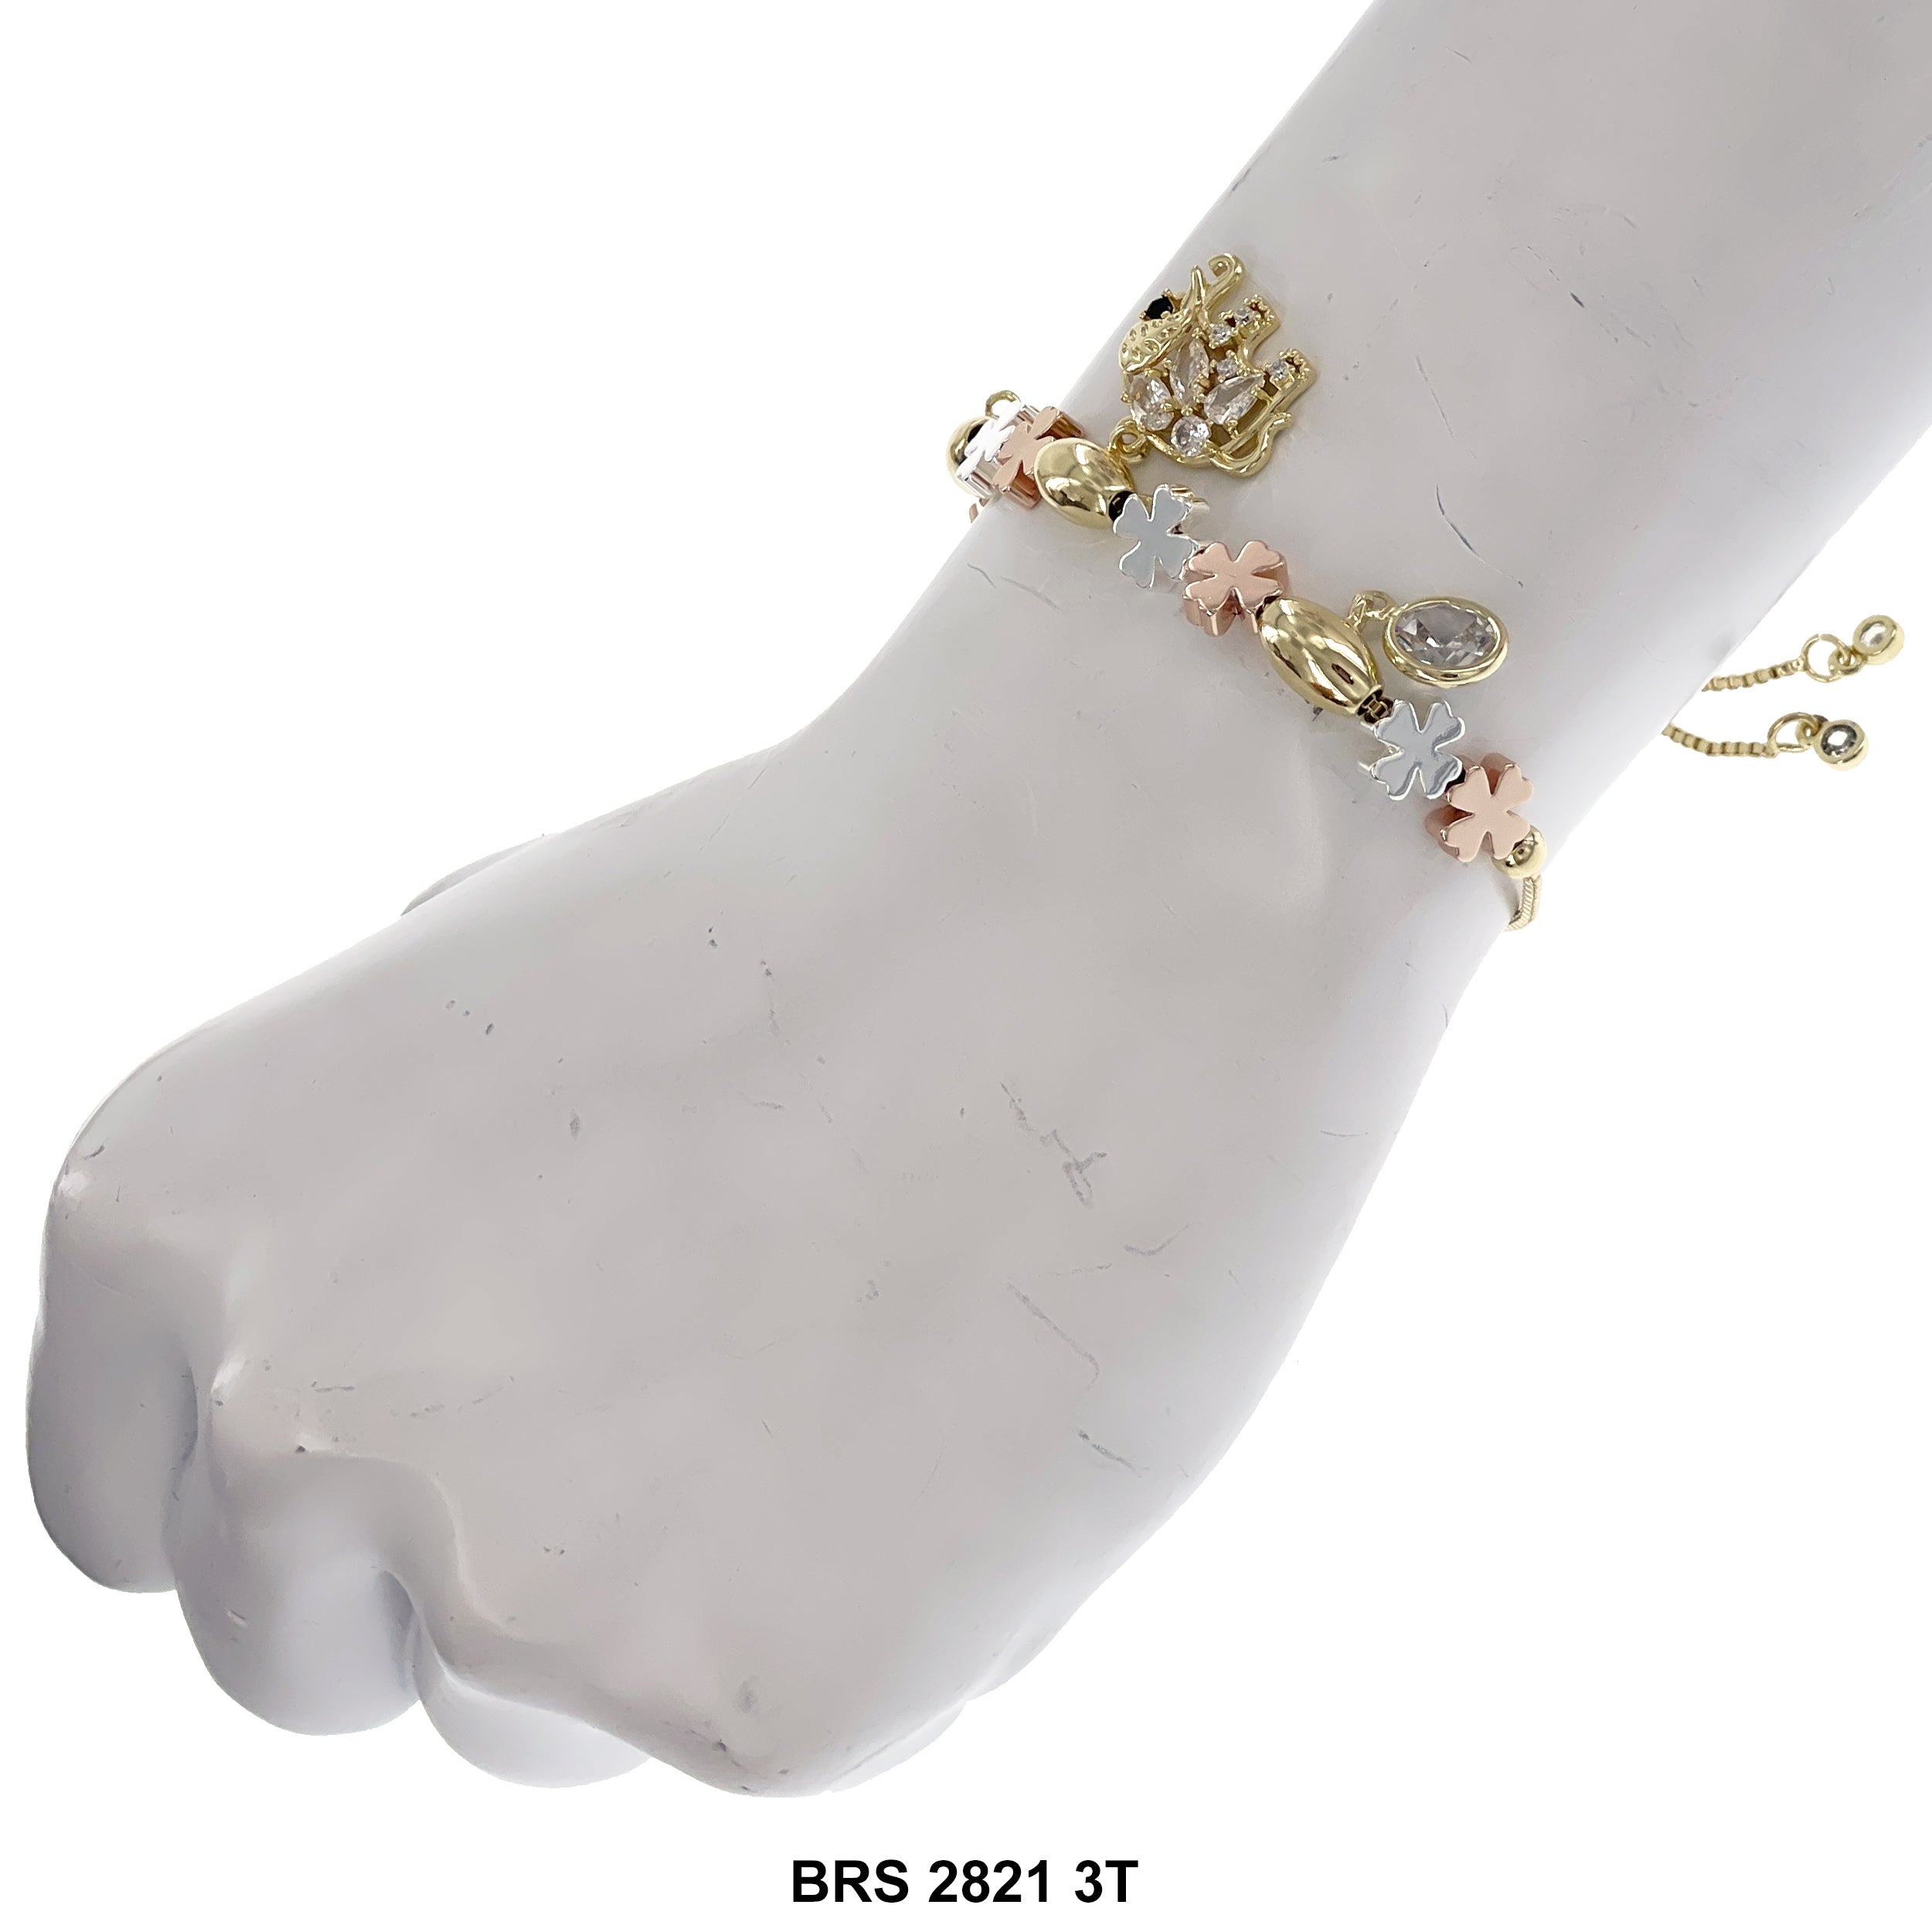 Elephant Stoned Charms 4- Leaf-clover Beads Adjustable Bracelet BRS 2821 3T